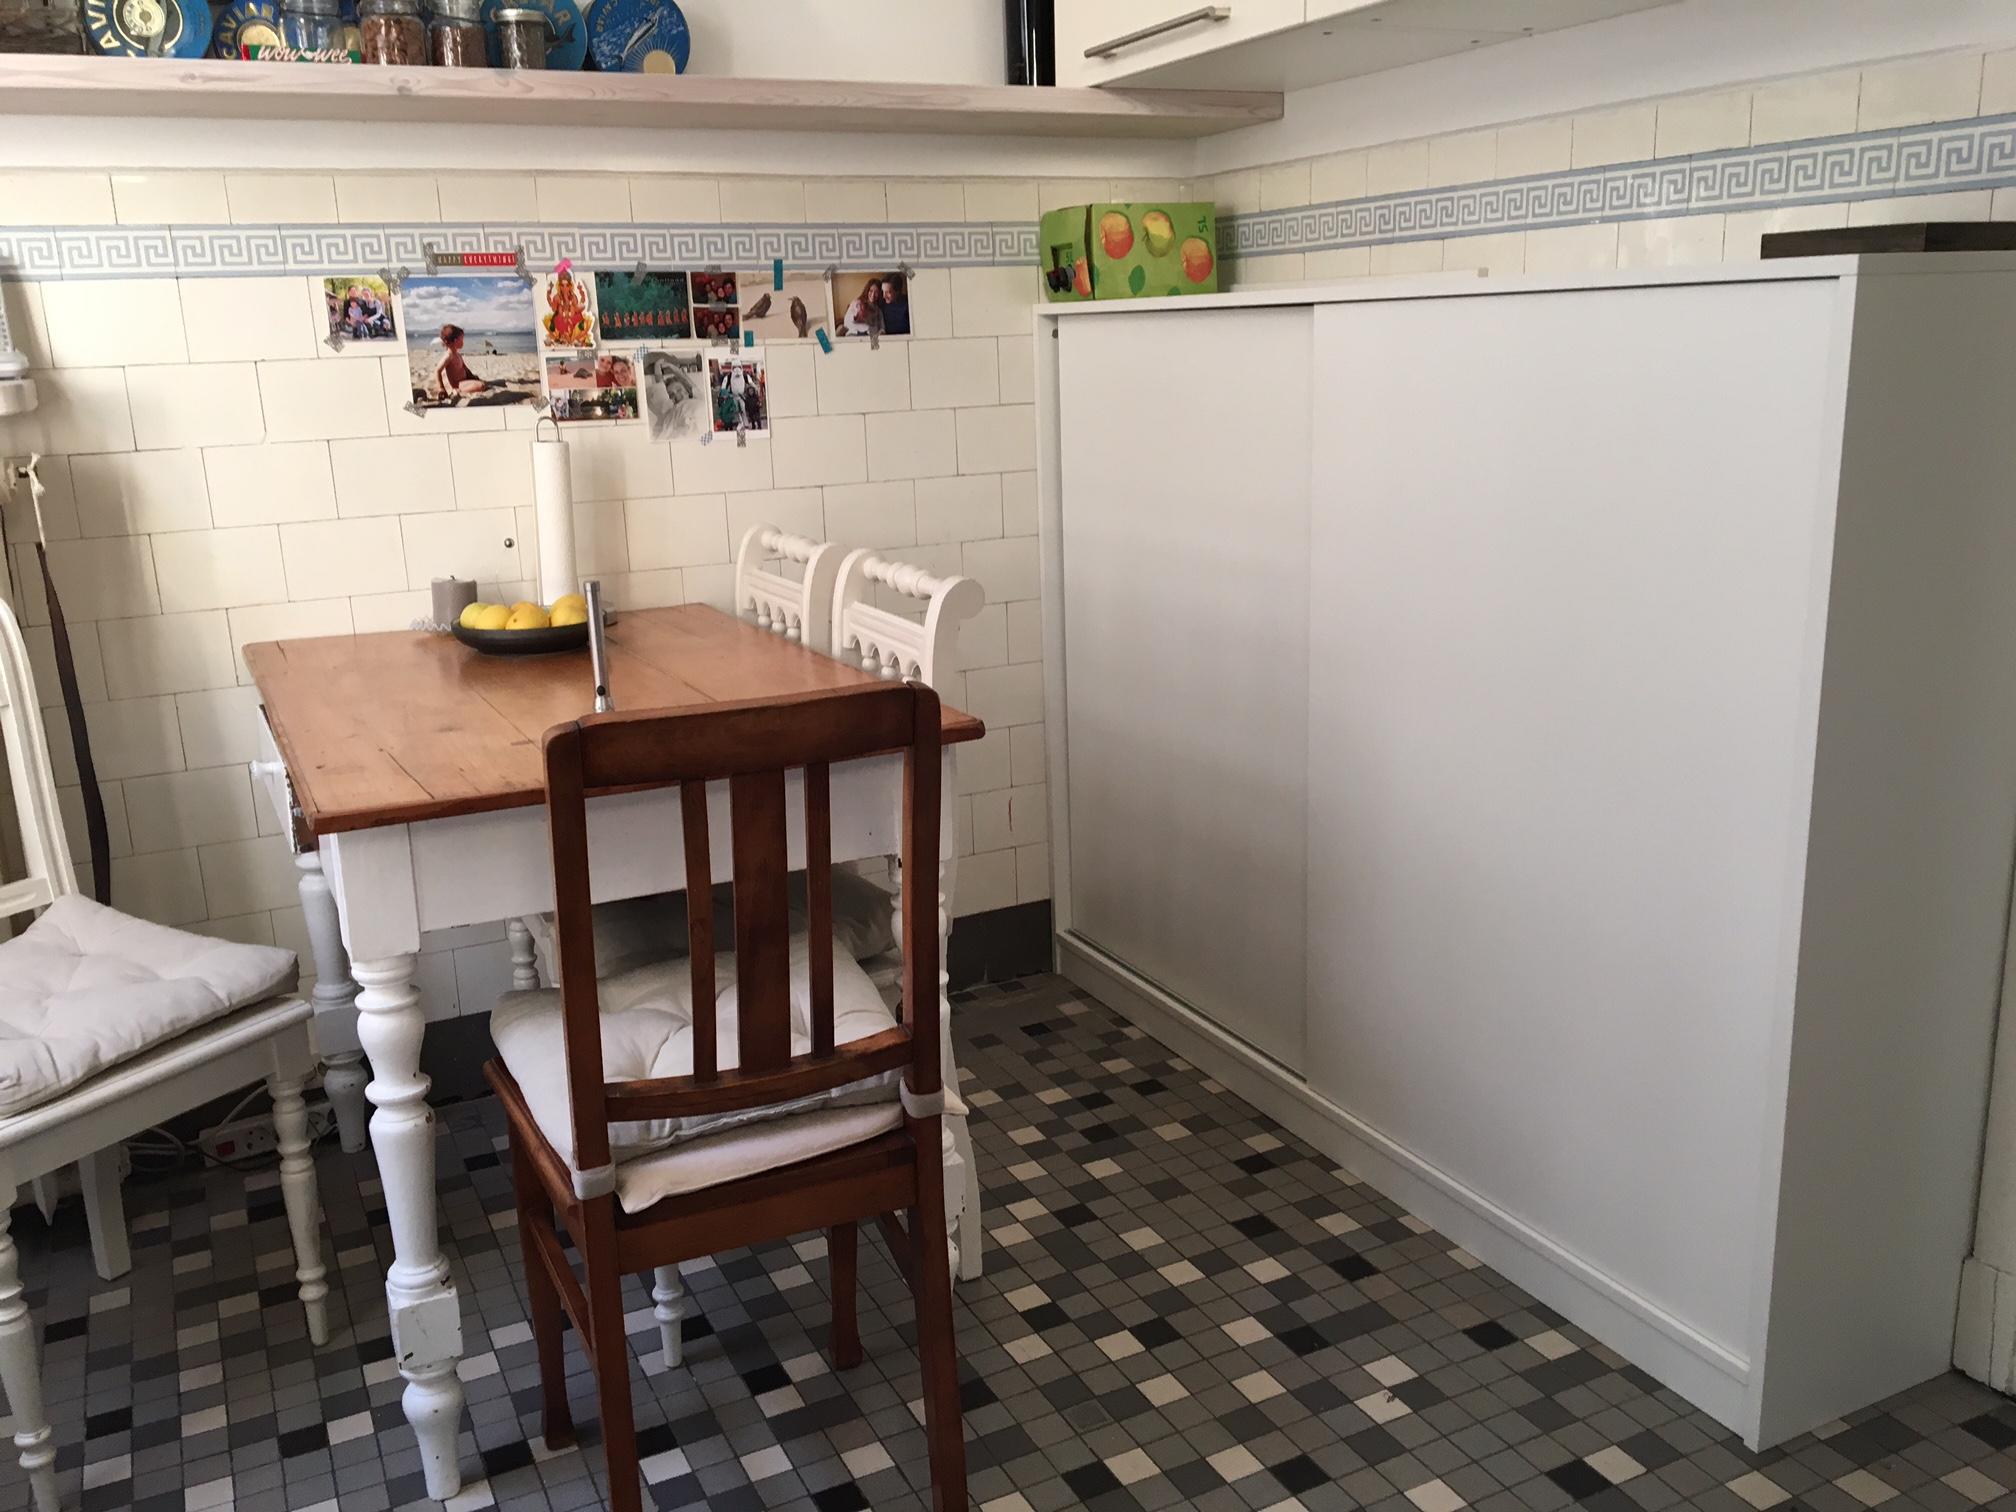 Sideboard für die Küche #kommode #sideboard ©Pickawood GmbH